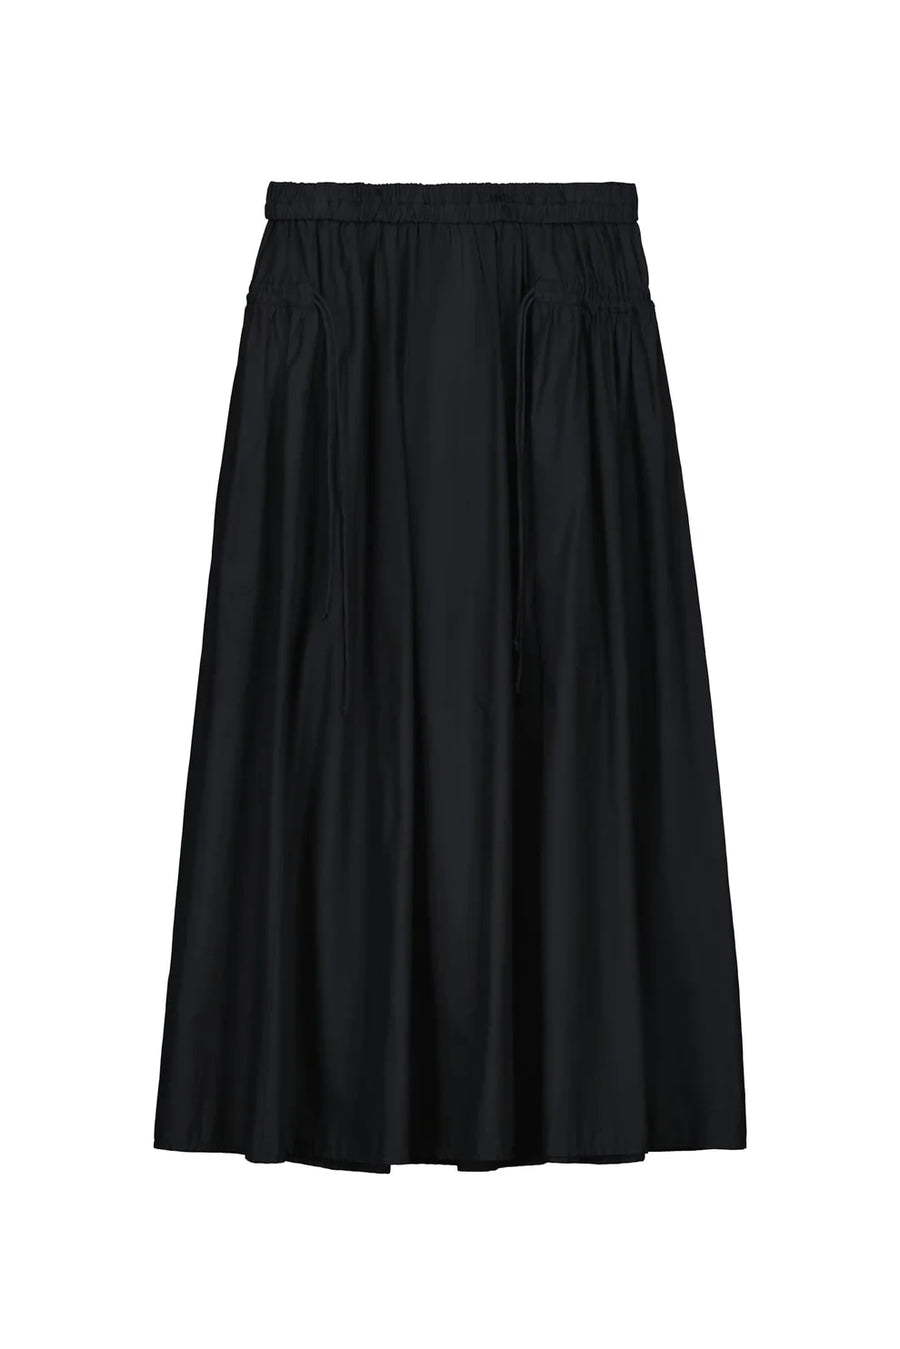 Freyja Skirt in Black by Kowtow-Idlewild